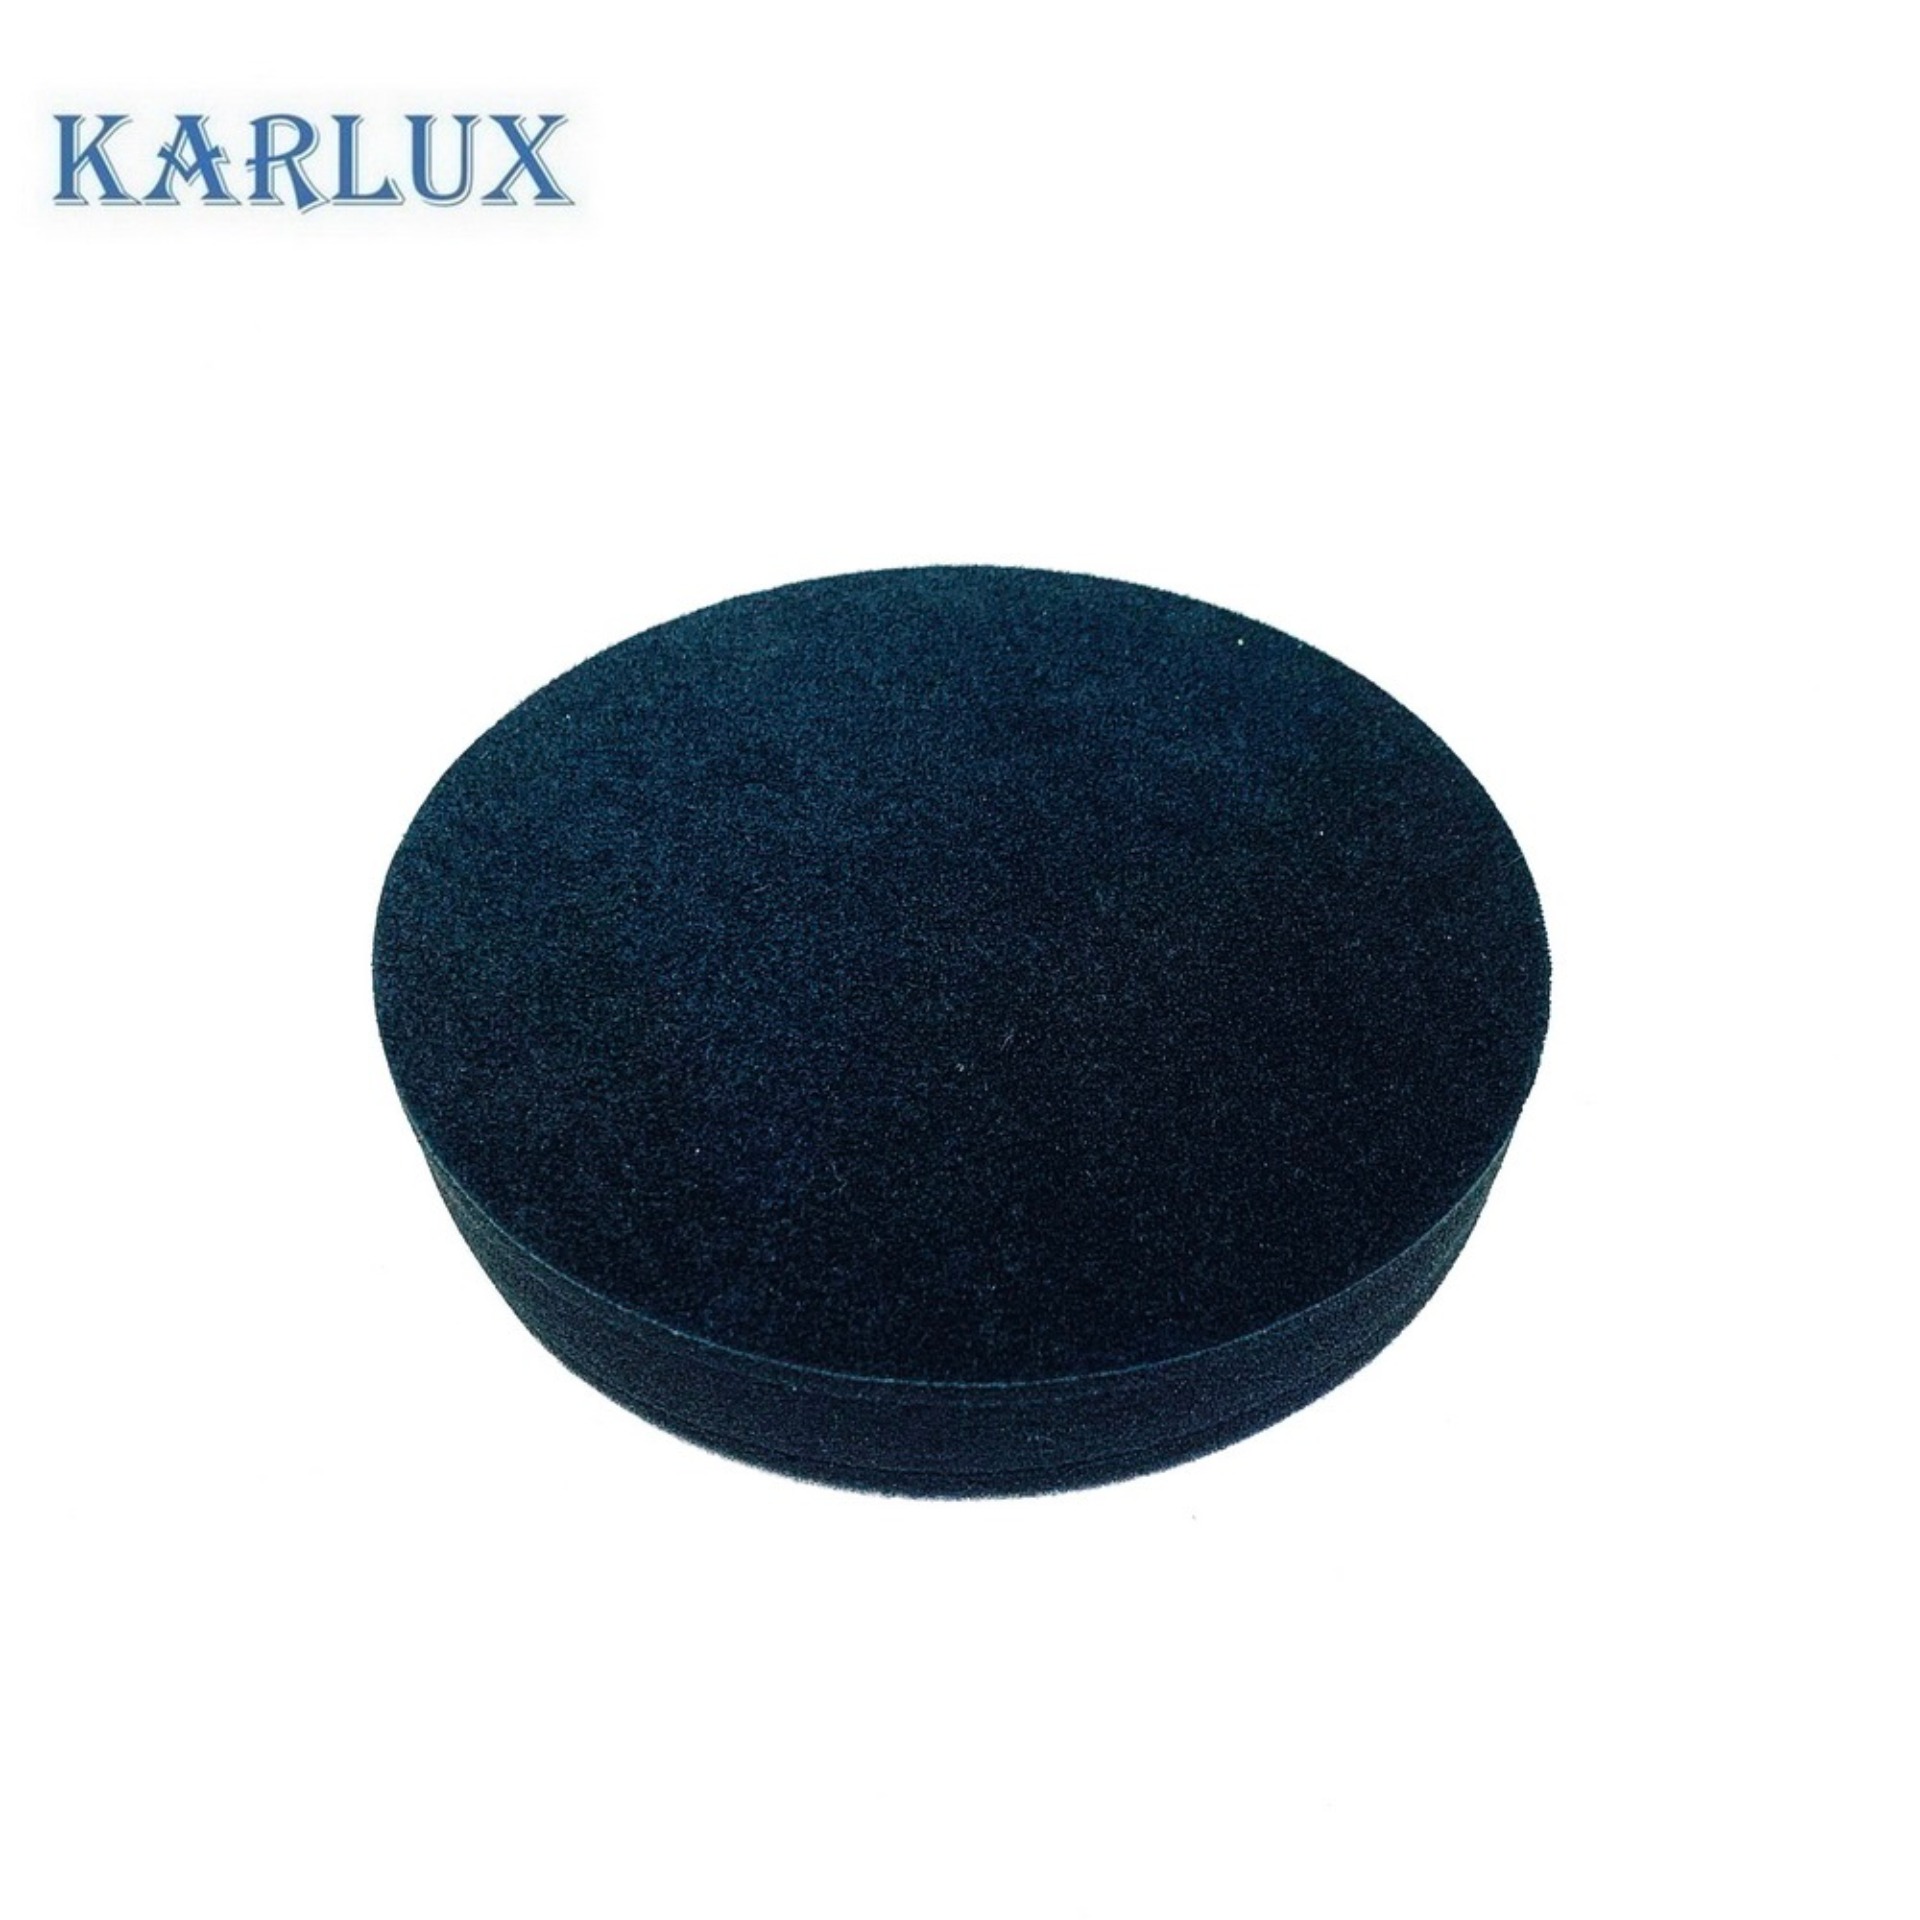 Karlux POLISHING FOAM 6นิ้ว ฟองน้ำสีดำ ขัดเงาละเอียด แบบเรียบ